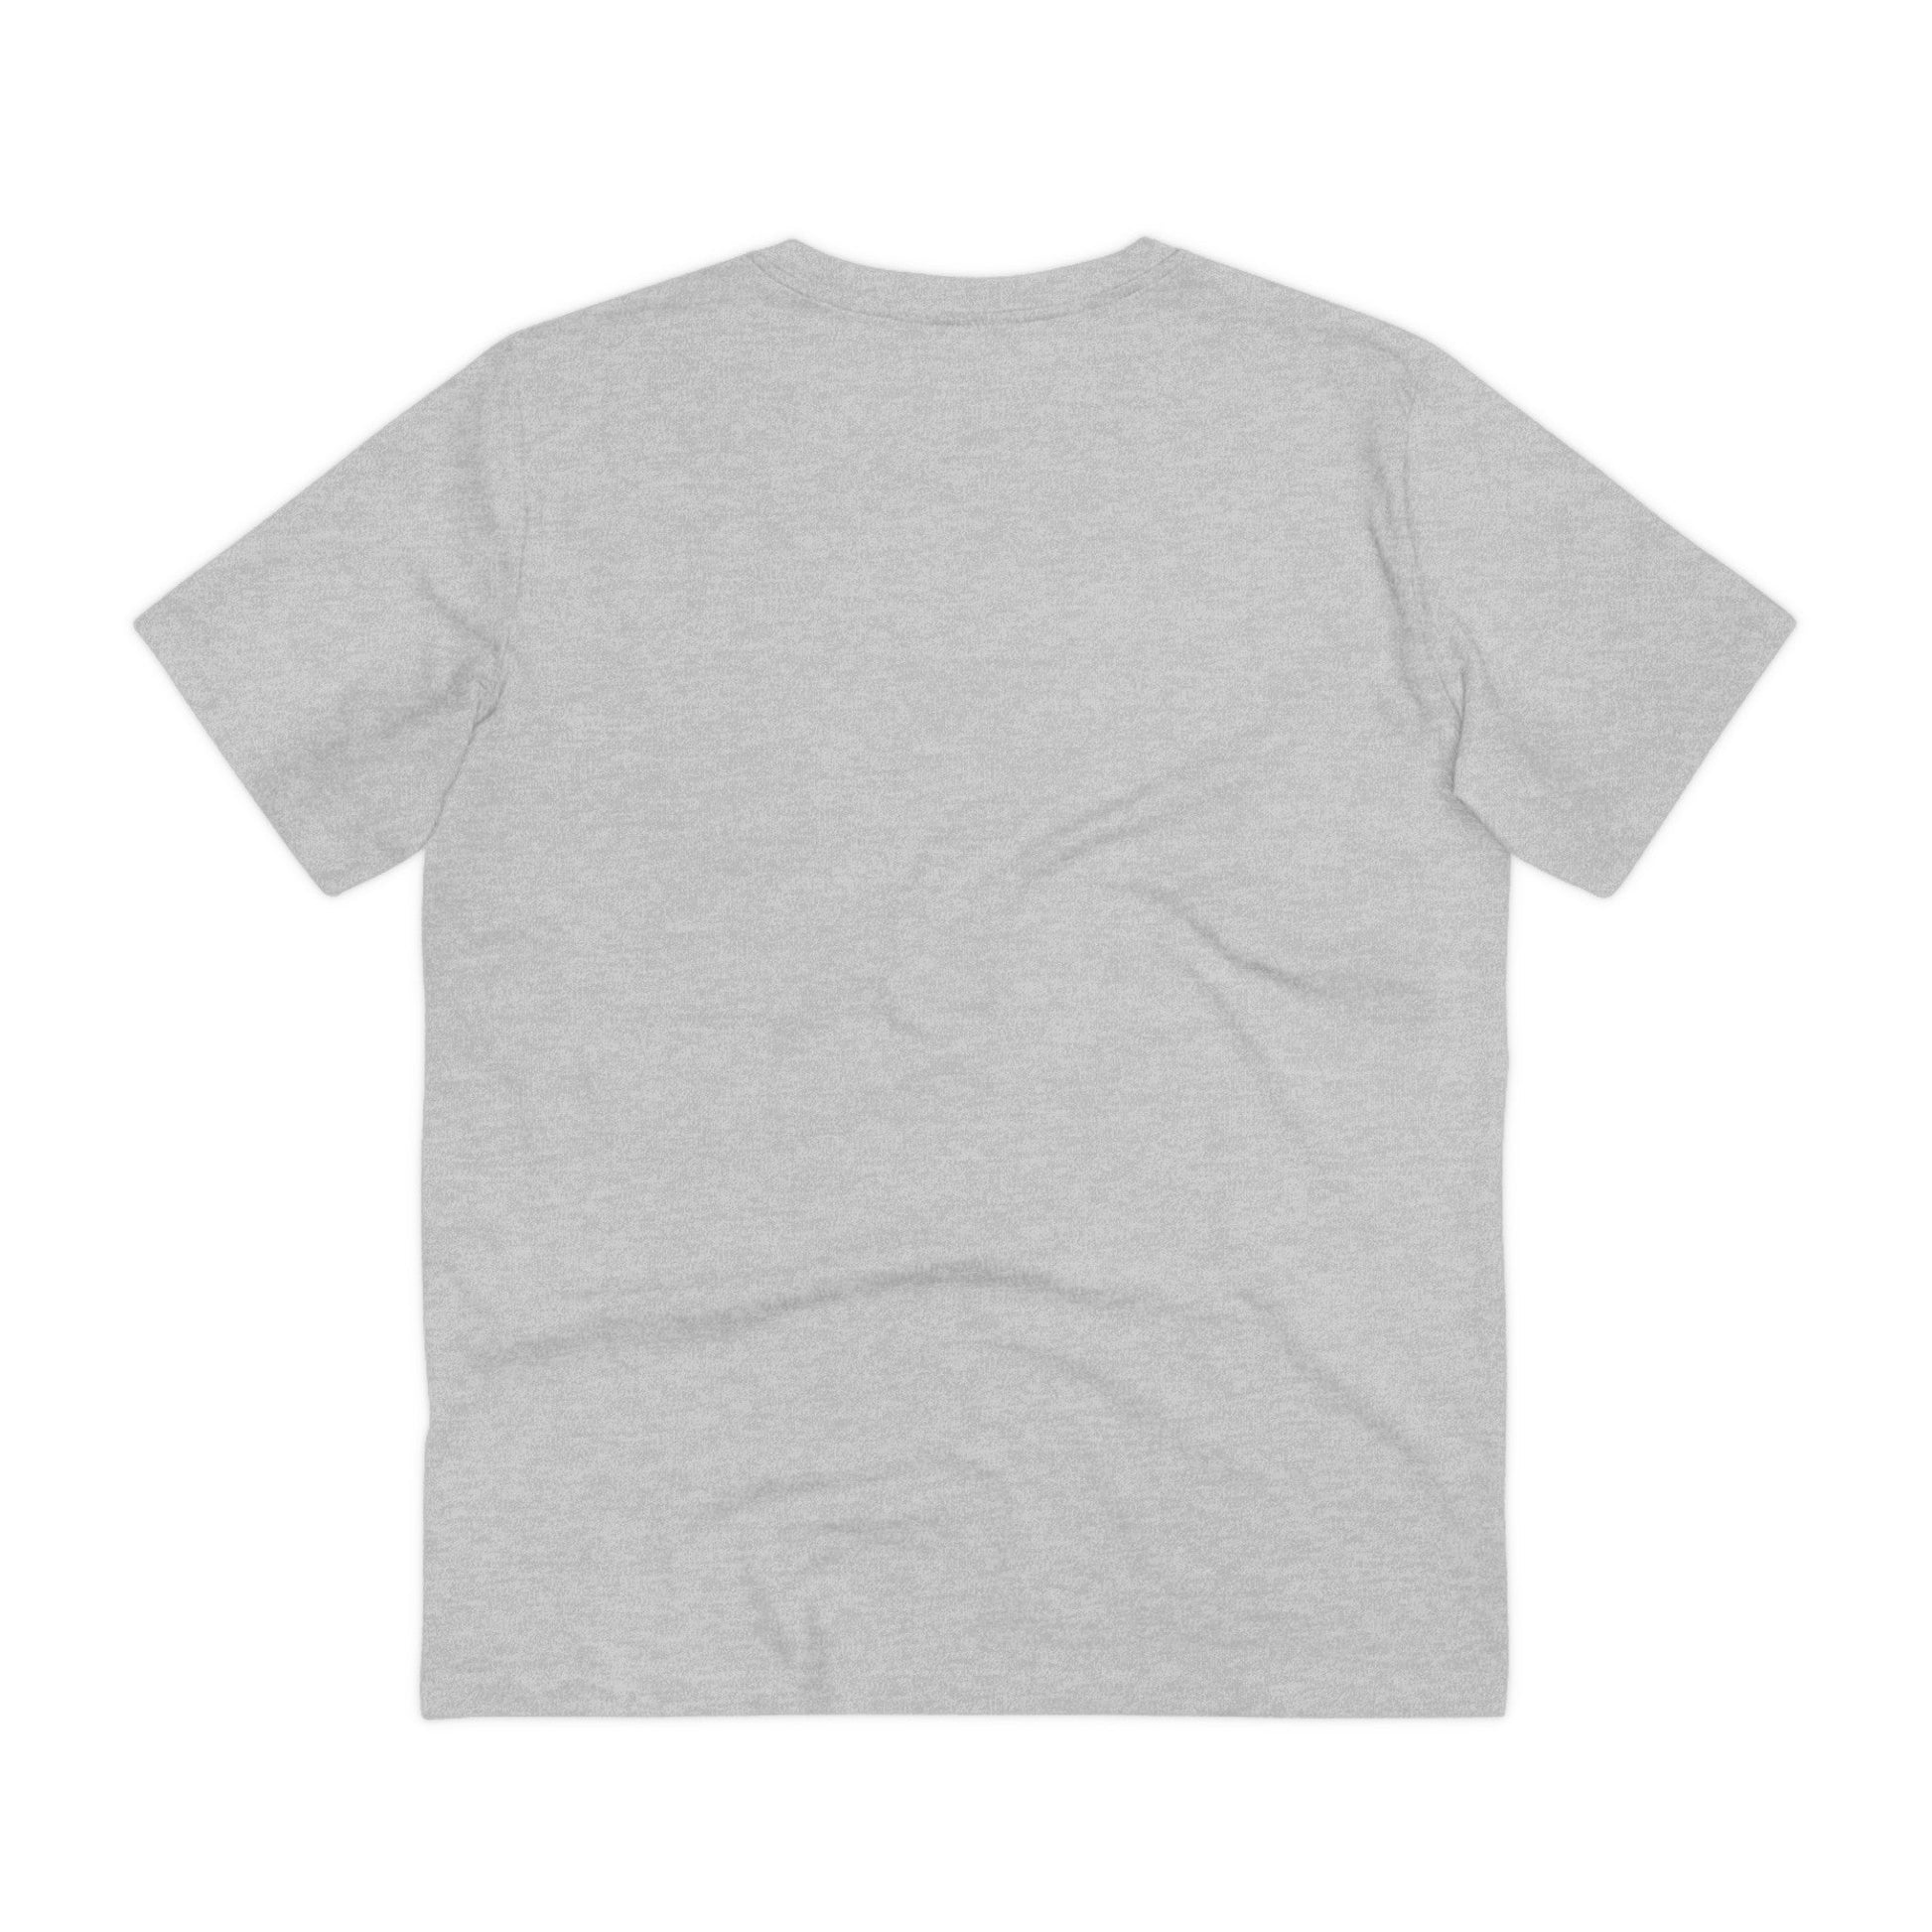 Printify T-Shirt Sandwich Einhorn - Unicorn World - Front Design